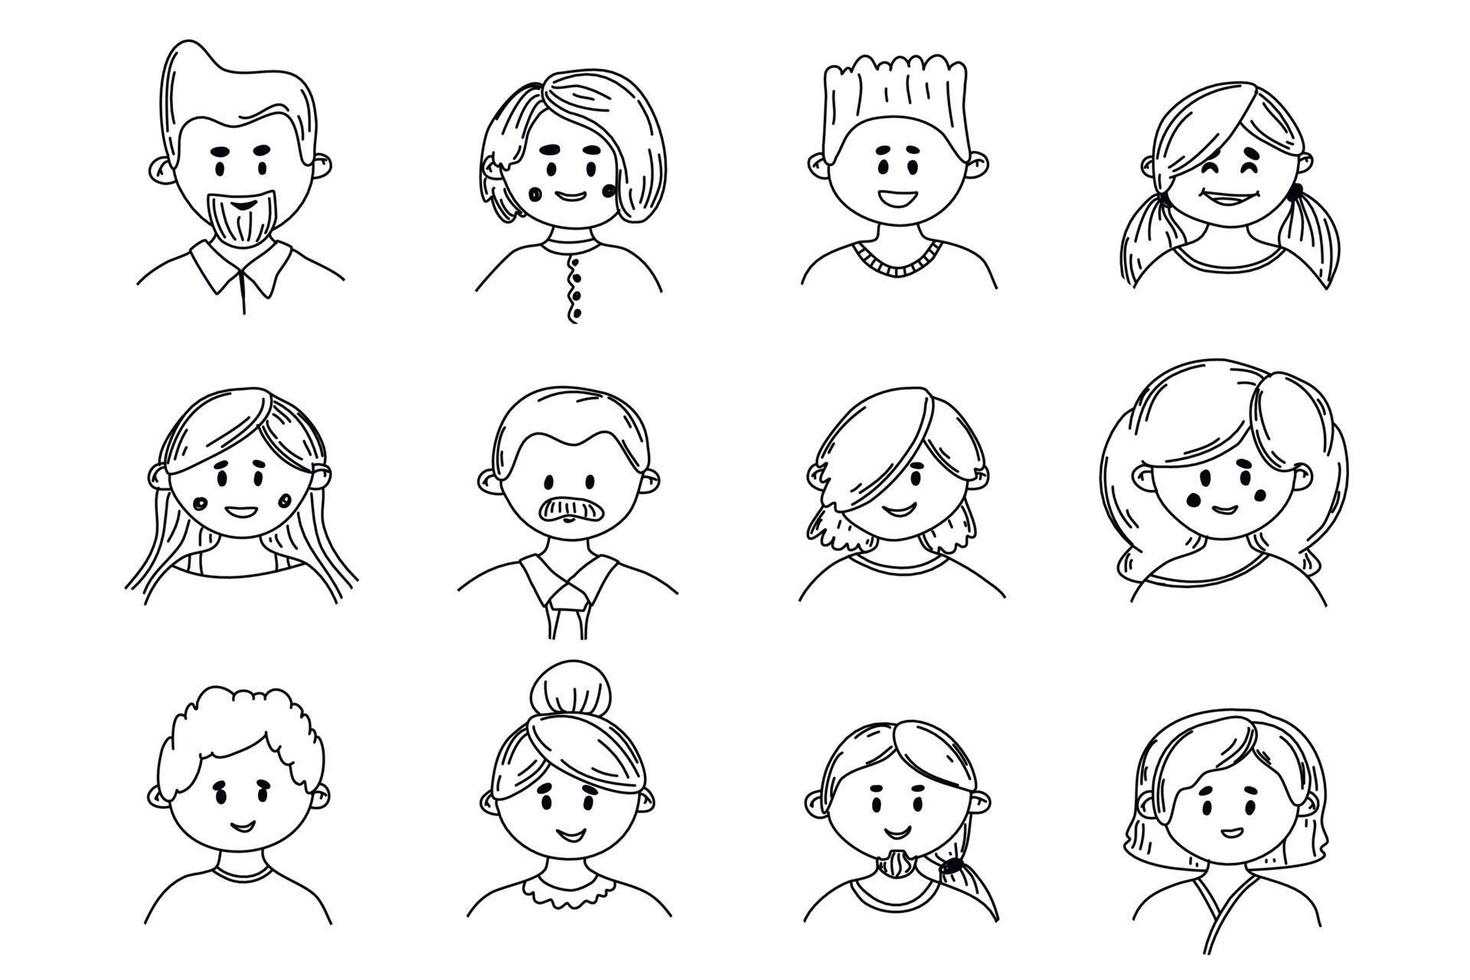 set di avatar di doodle di persone. diversità vecchi e giovani uomini e donne. persone con acconciature diverse. illustrazione vettoriale in stile schizzo piatto. icone di ritratti impostate.